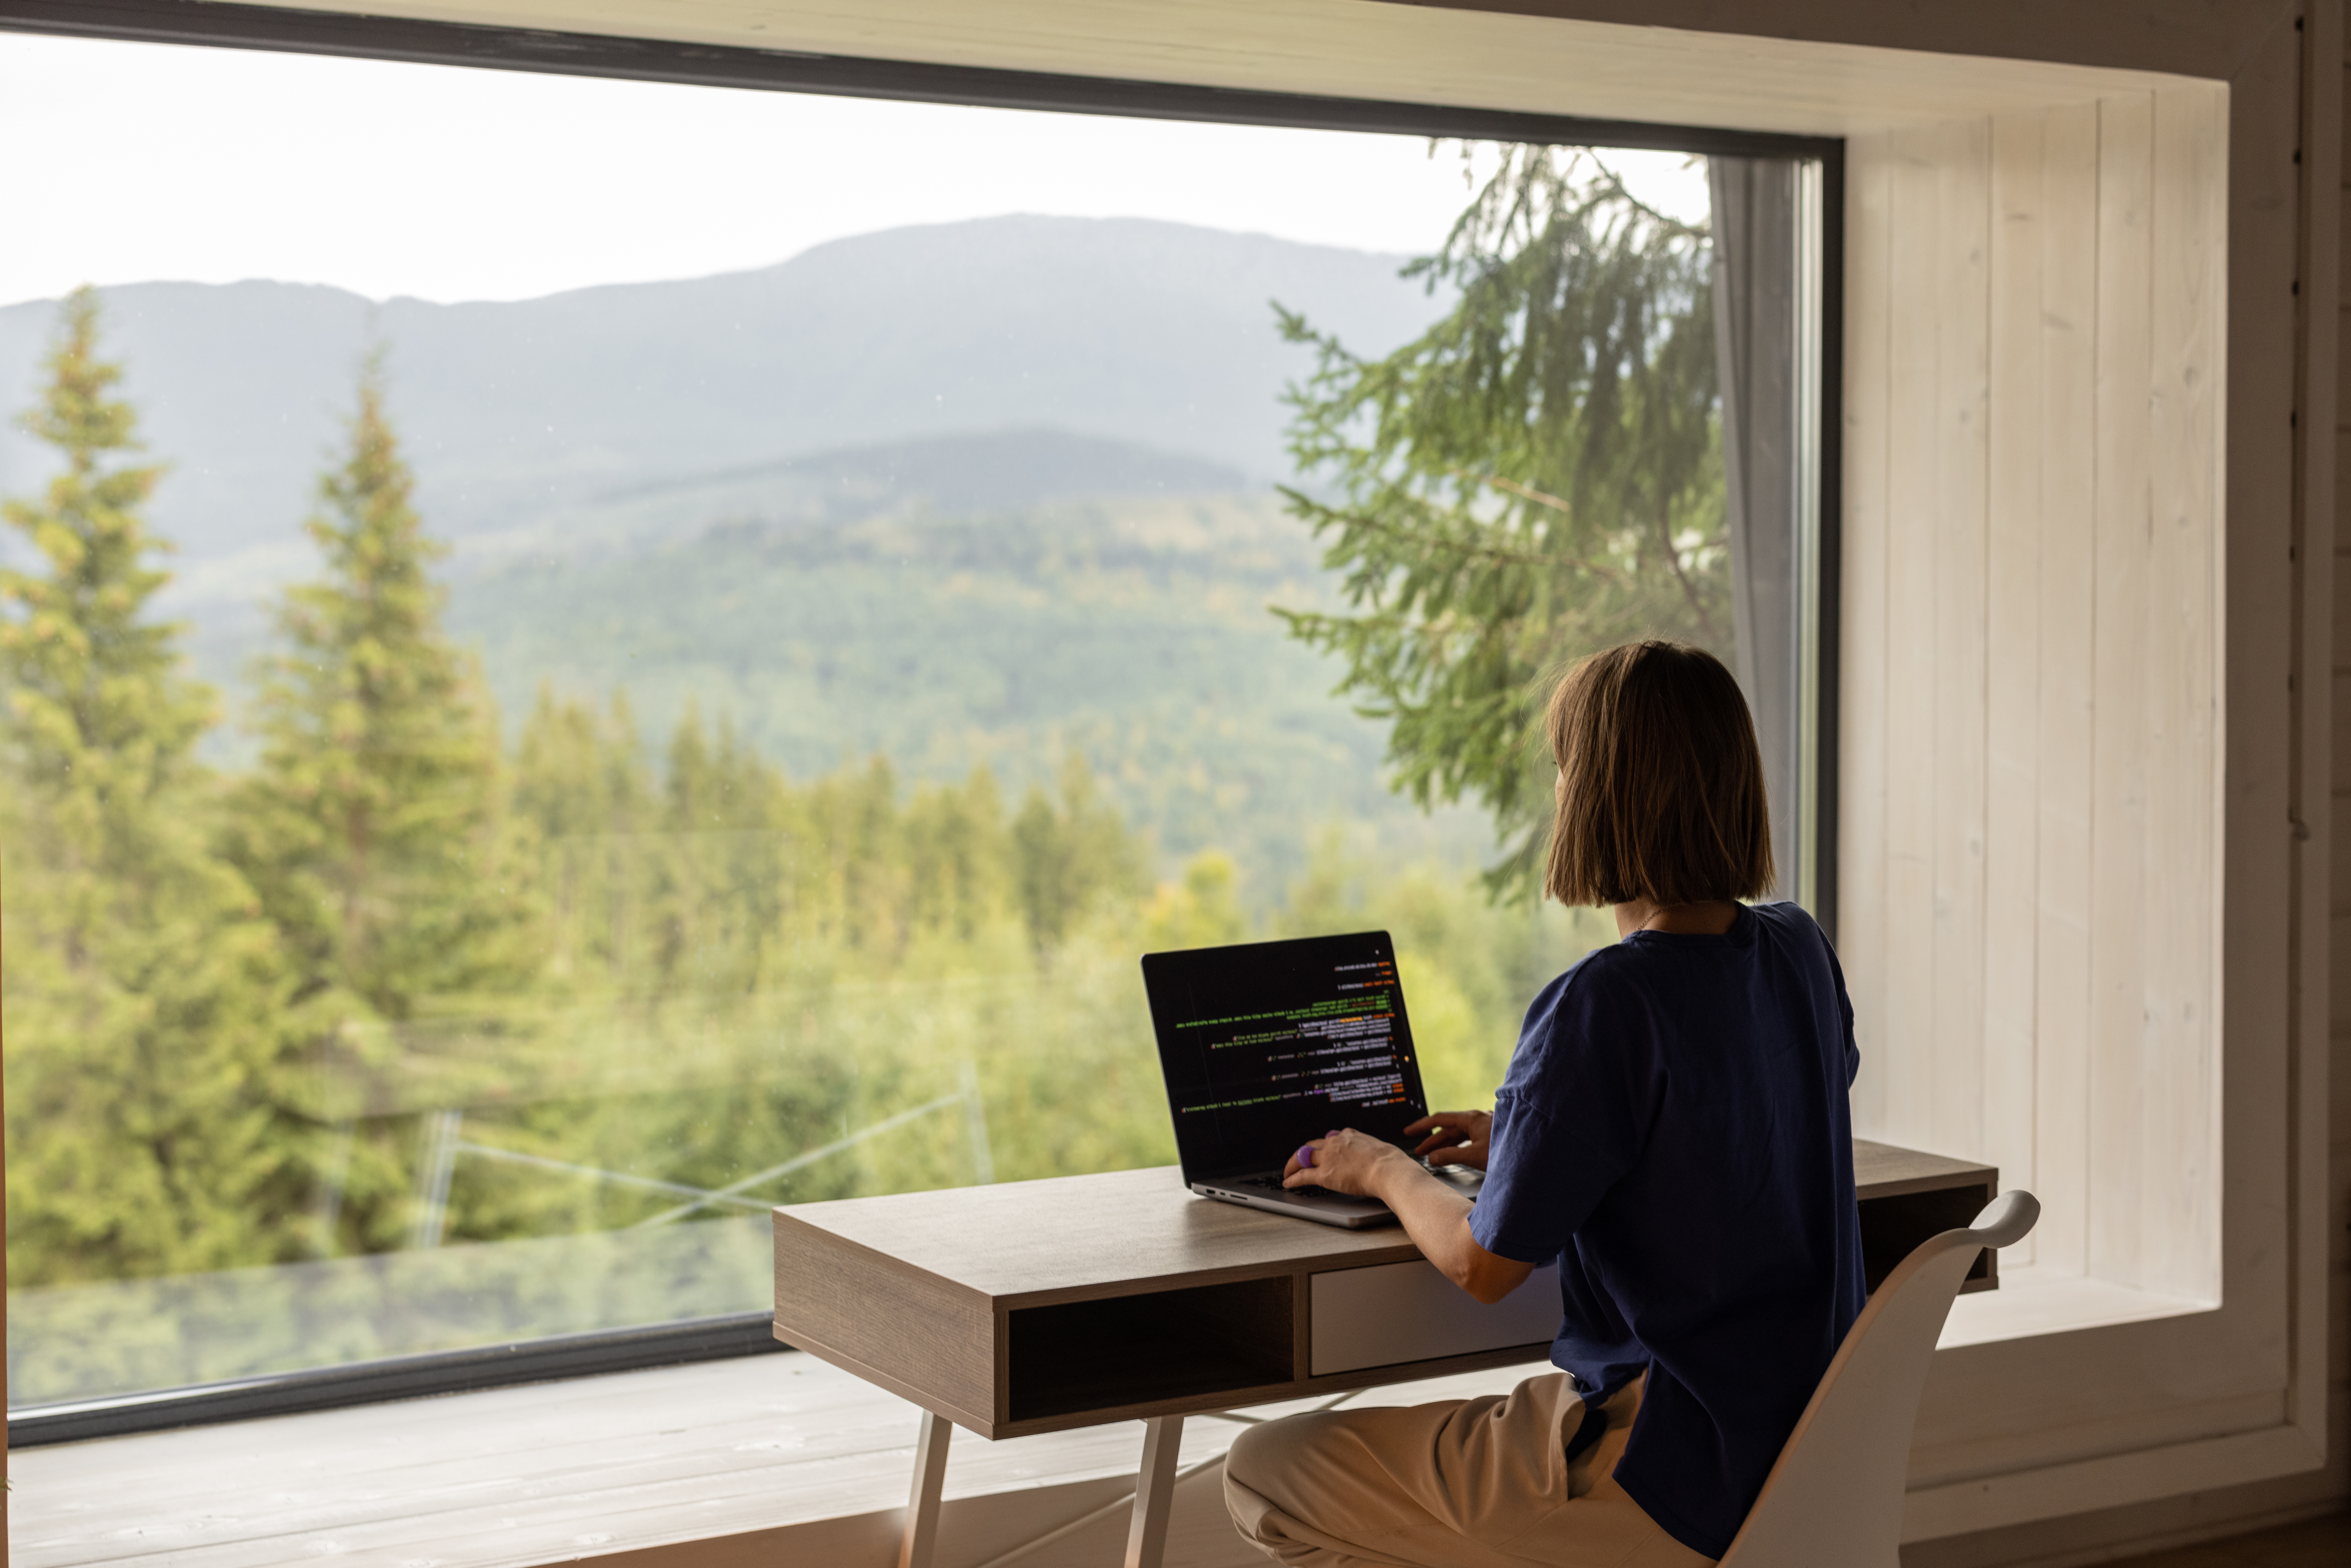 En kvinne sitter ved en pult og skriver på en PC foran et stort vindu som viser en utsikt over en grønn barskog.